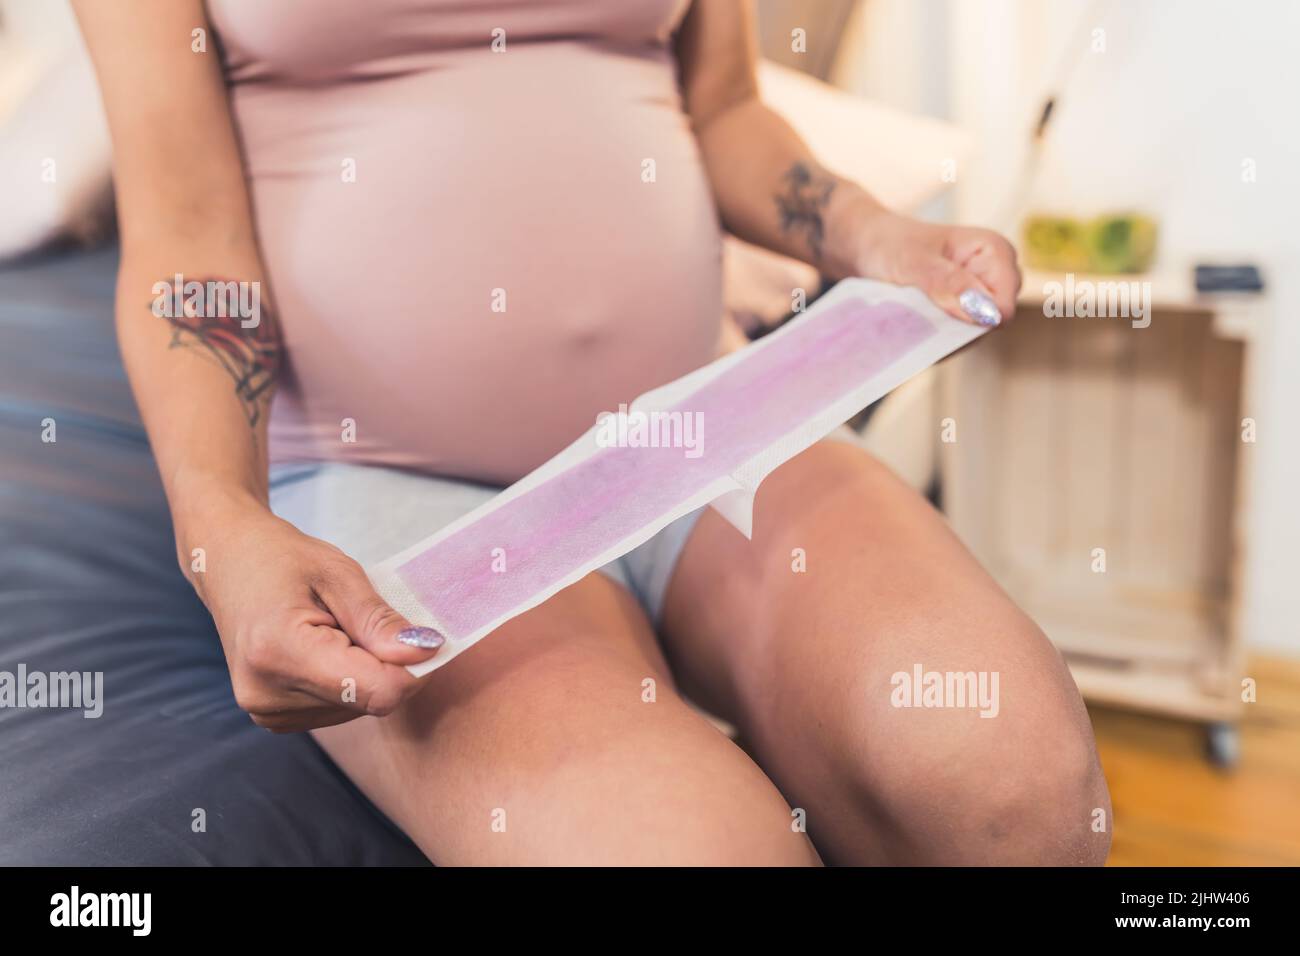 Femme enceinte de race blanche qui se dépilation pour ses jambes avec cirage, gros plan à l'intérieur. Photo de haute qualité Banque D'Images